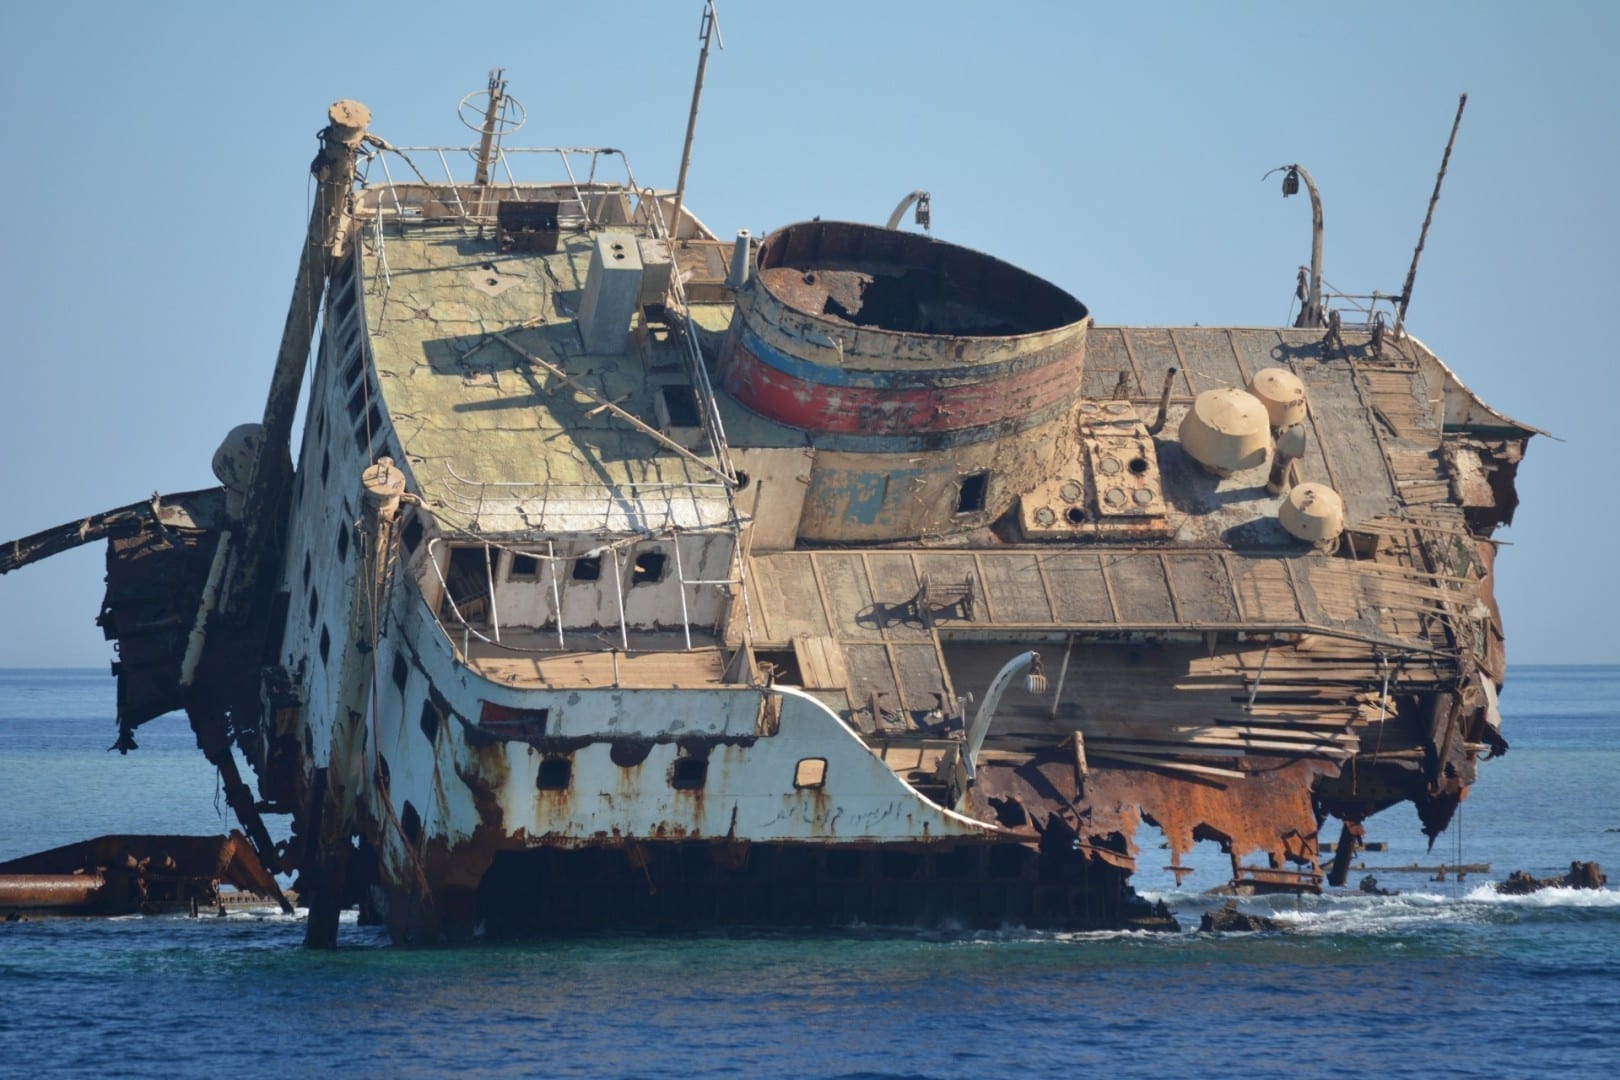 Viejo naufragio ruso en la bahía de Na'ama Sharm el Sheikh Egipto